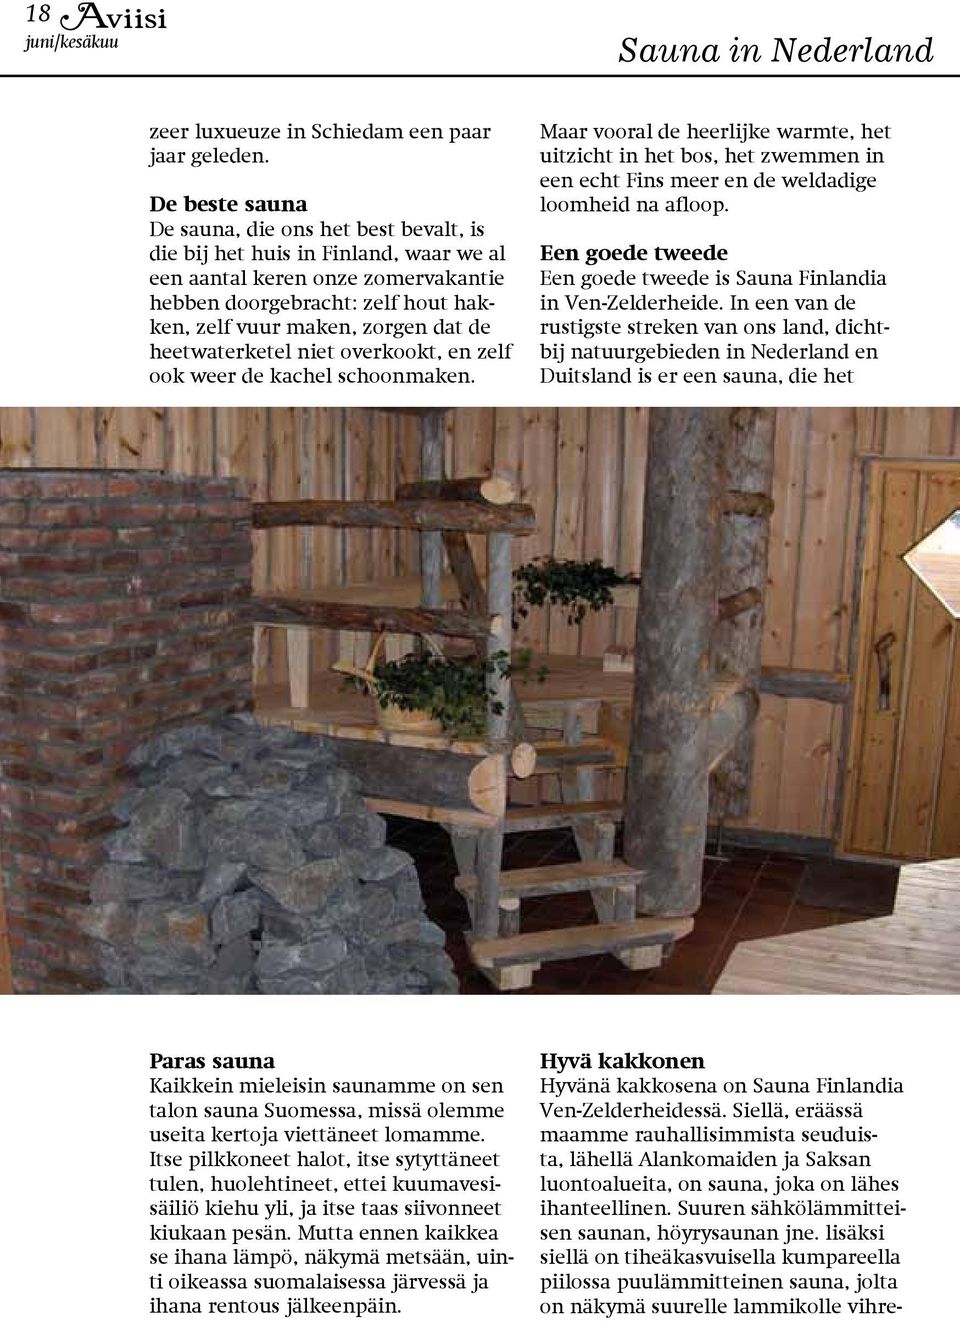 lisäksi siellä on tiheäkasvuisella kumpareella piilossa puulämmitteinen sauna, jolta on näkymä suurelle lammikolle vihrezeer luxueuze in Schiedam een paar jaar geleden.